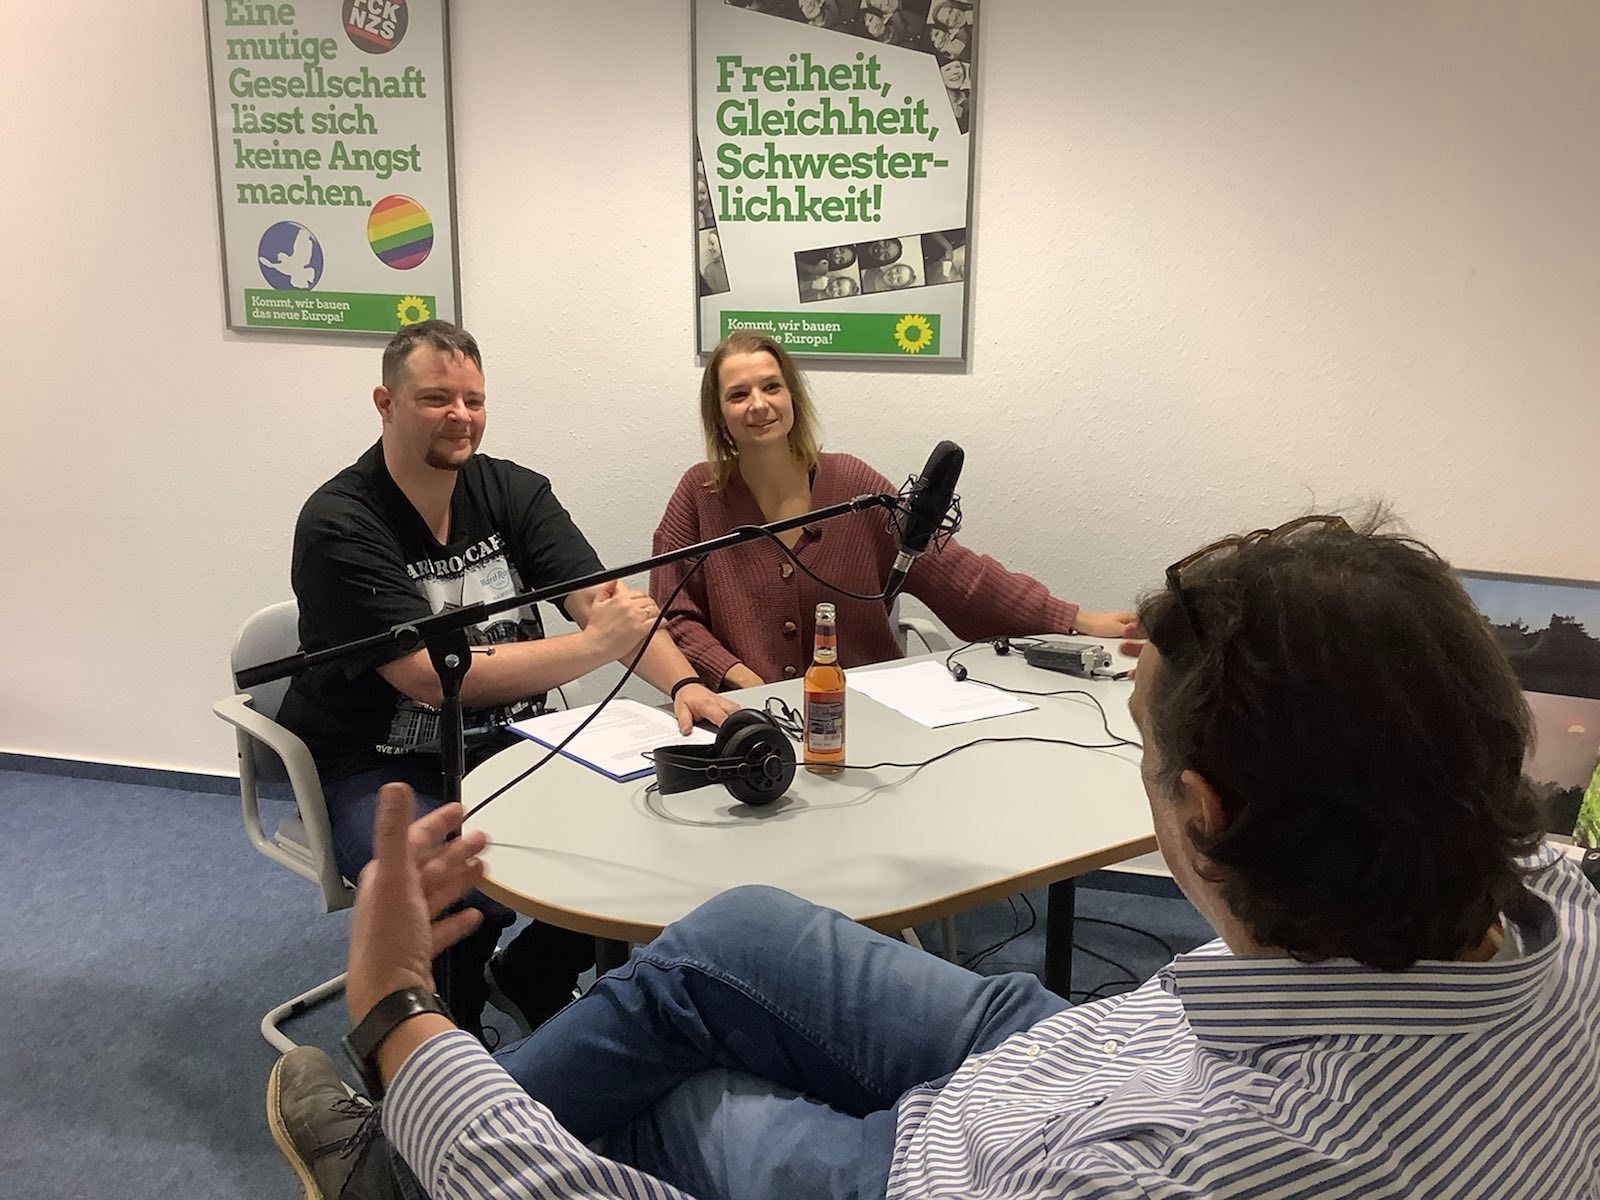 Blick in die Podcast-Aufnahme York und Jasmin in Gespräch mit Hartmut. Im HIntergrud zwei Plakate "Eine mutige GEsellschaft lässt sich keine Angst machen" und "Freiheit - Gleichheit - Schwesterlichkeit